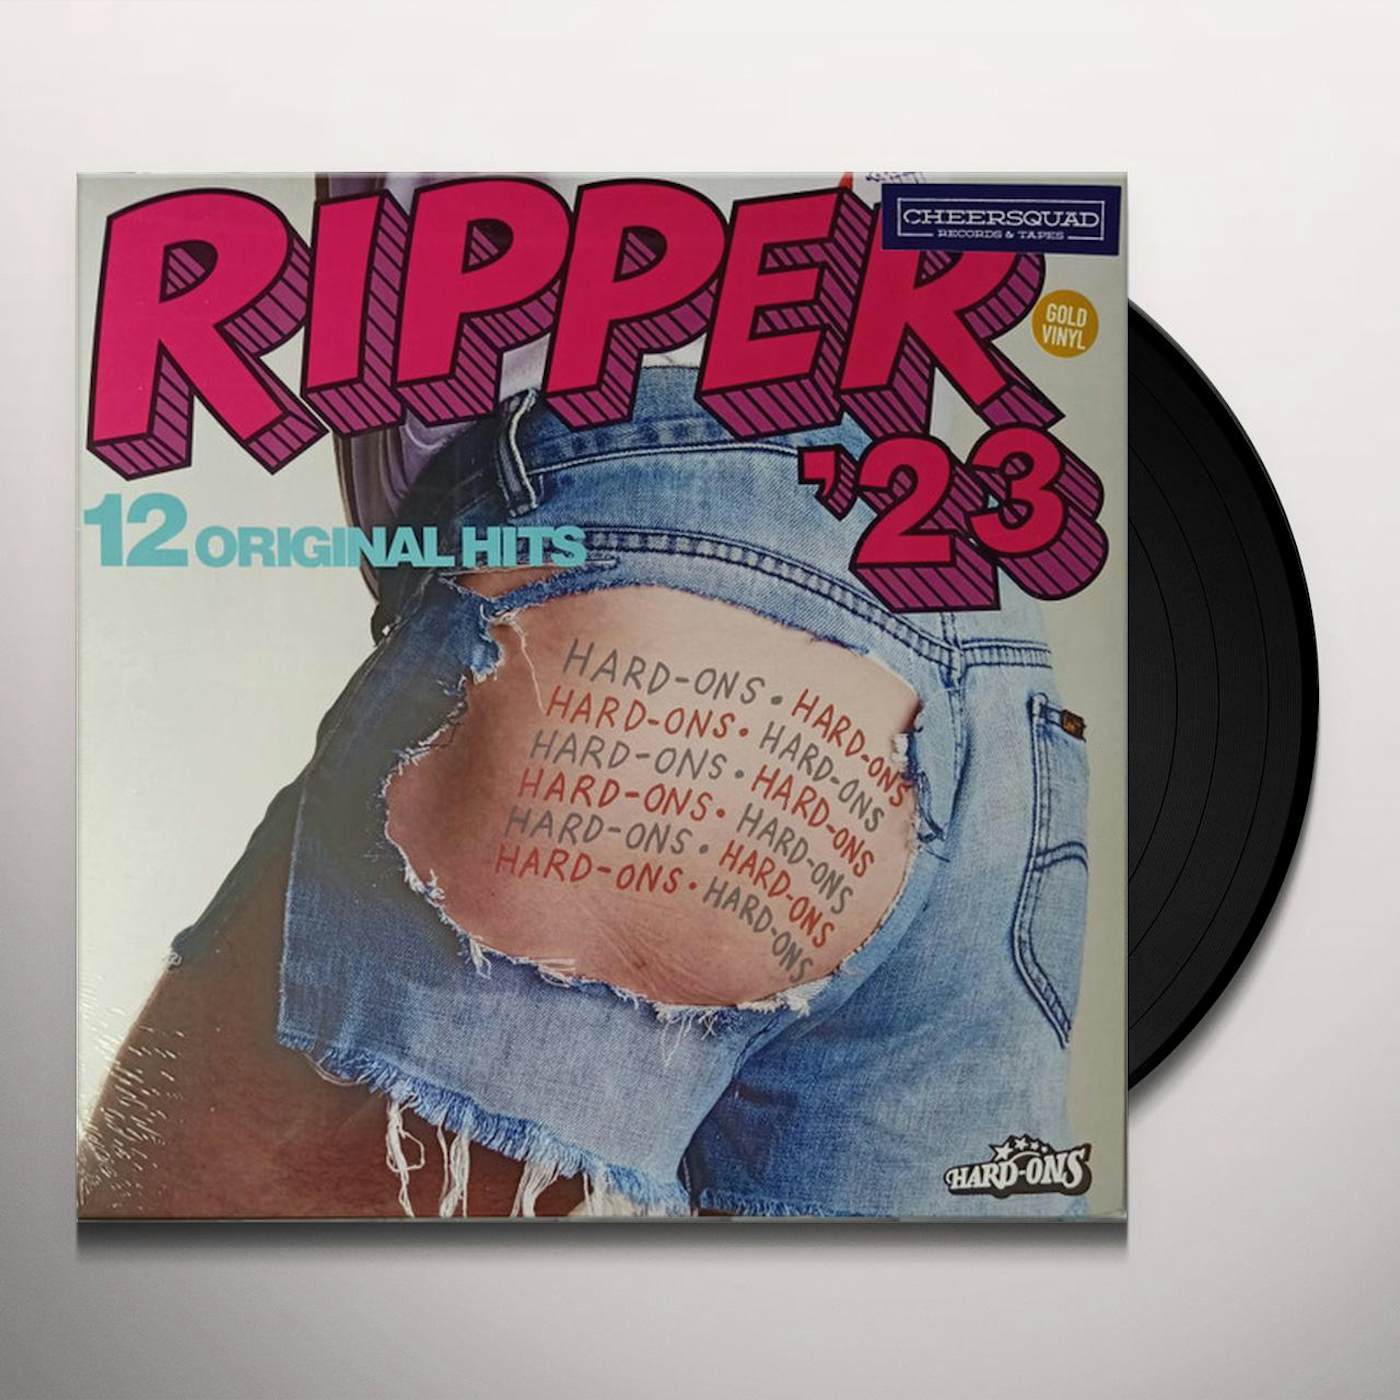 Hard-Ons RIPPER 23 Vinyl Record